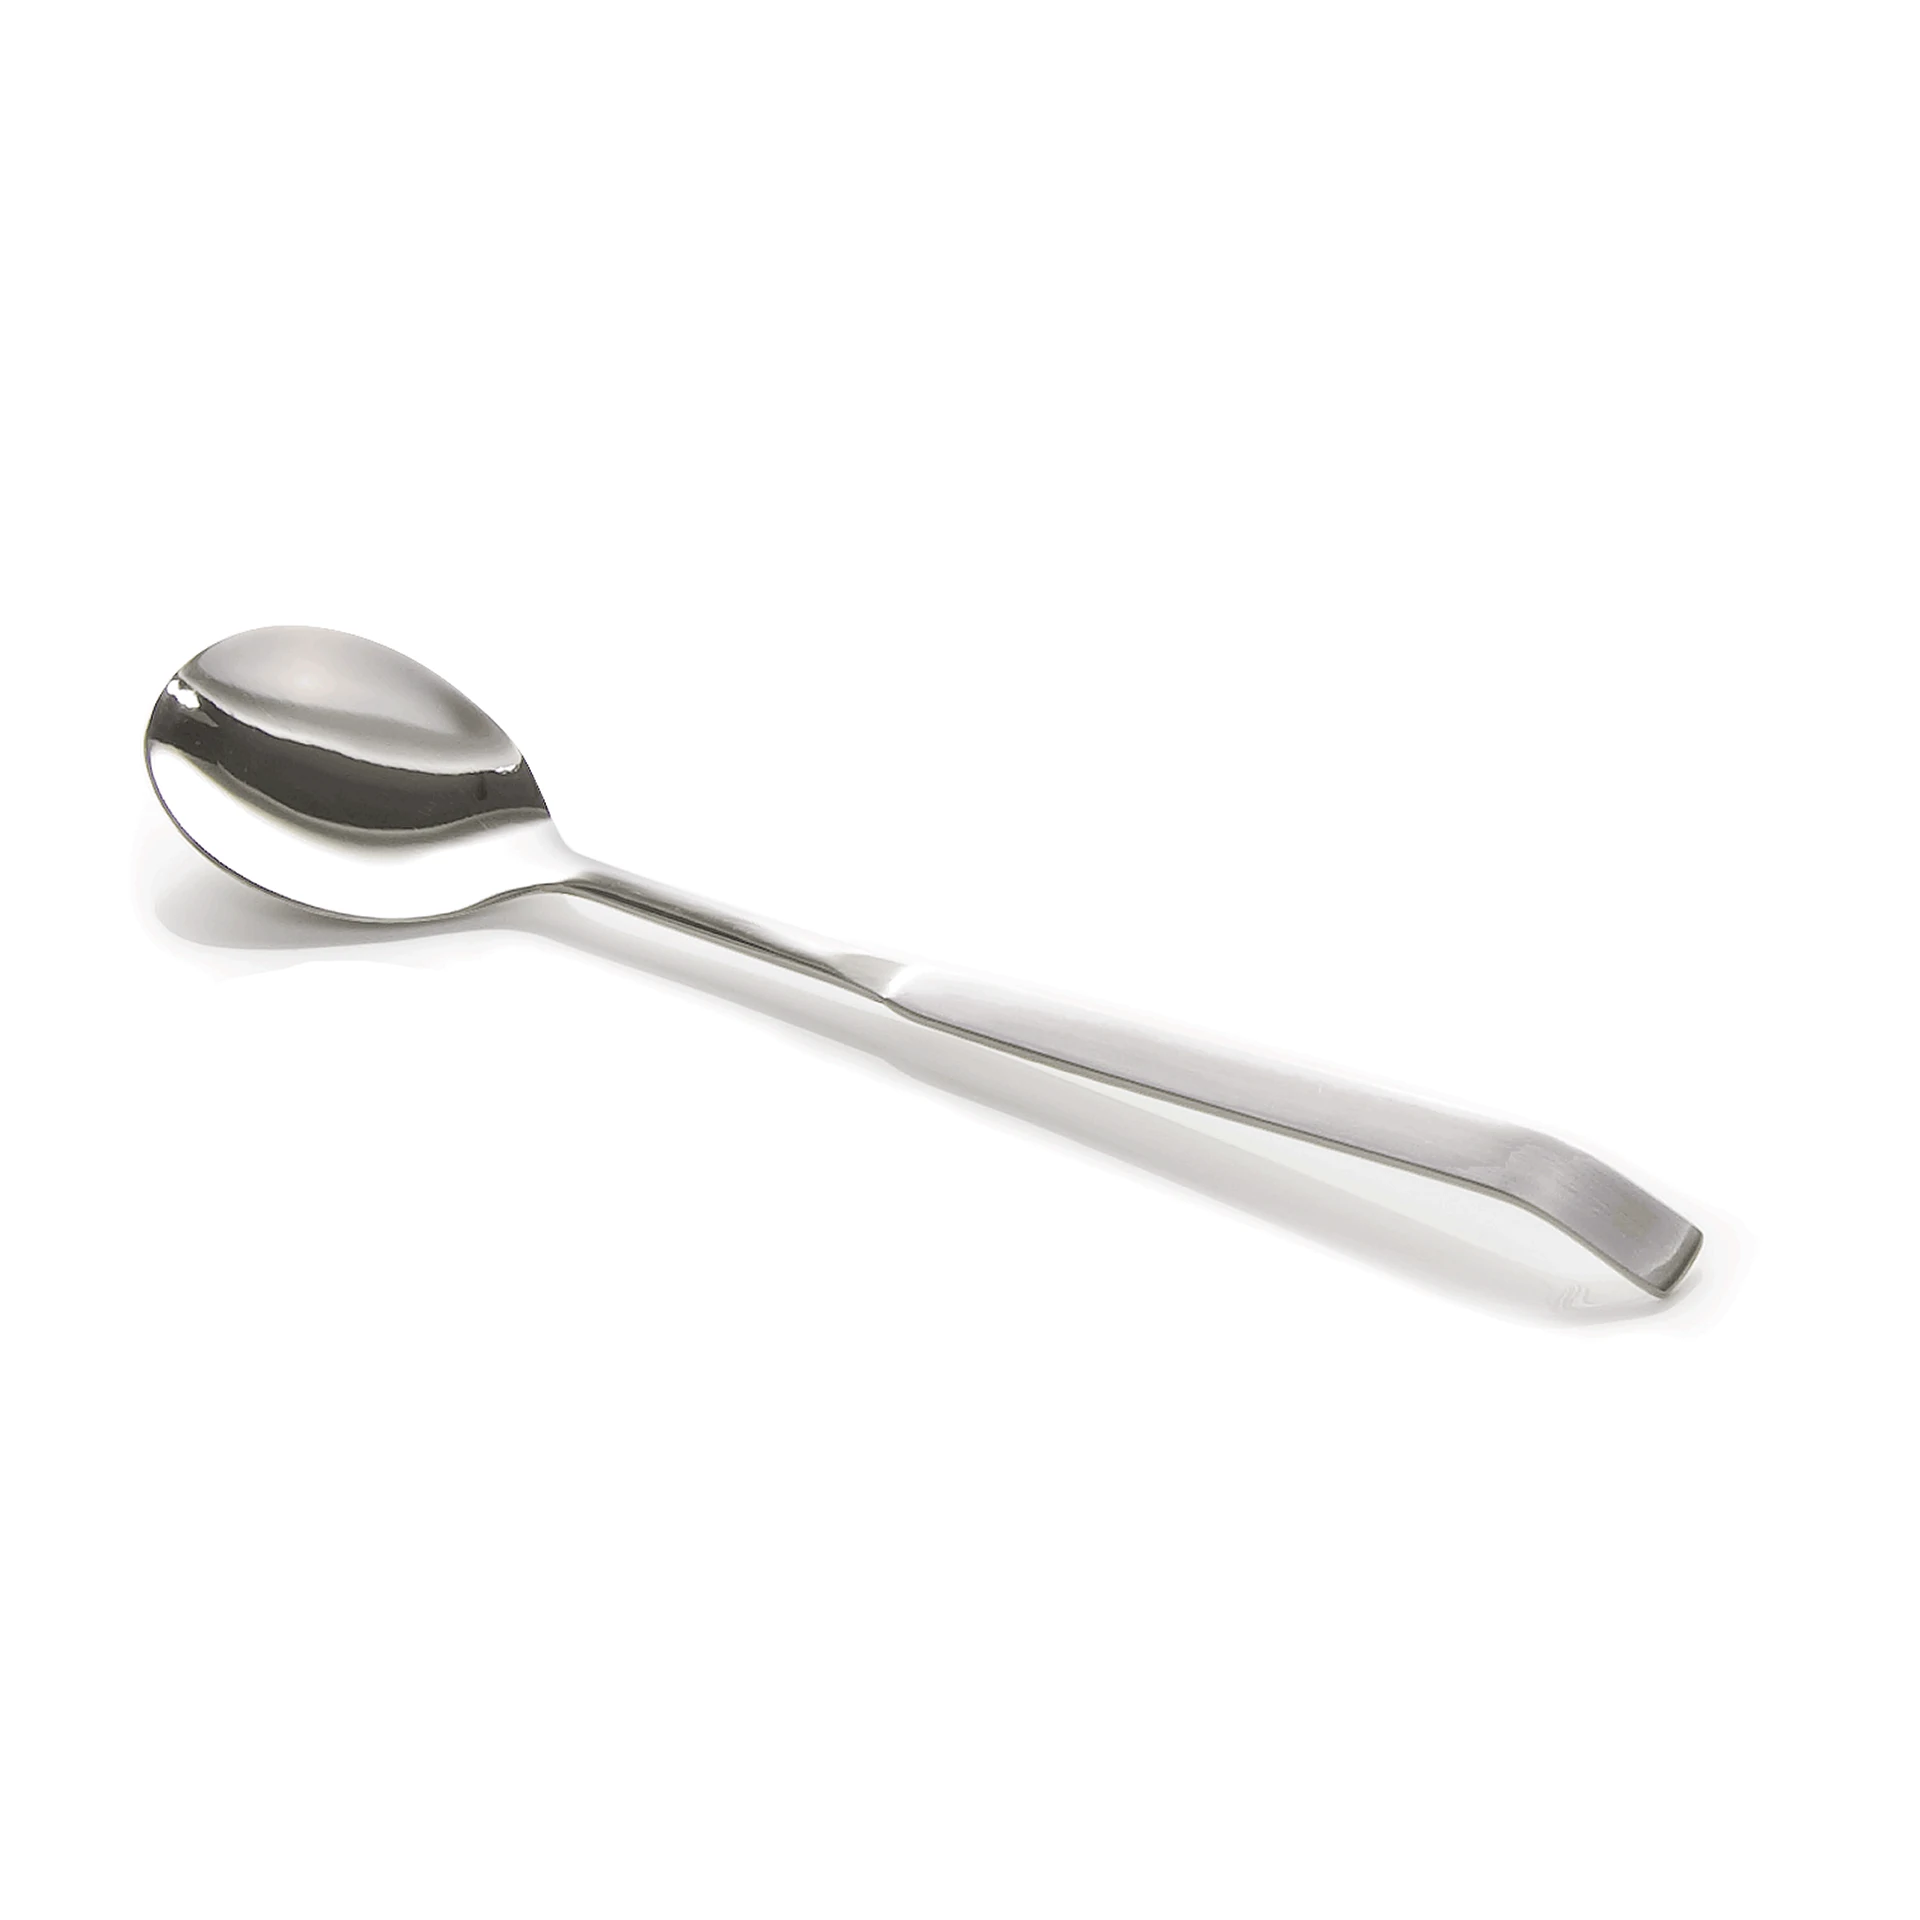 Salad spoon Kitchen Tool 2160